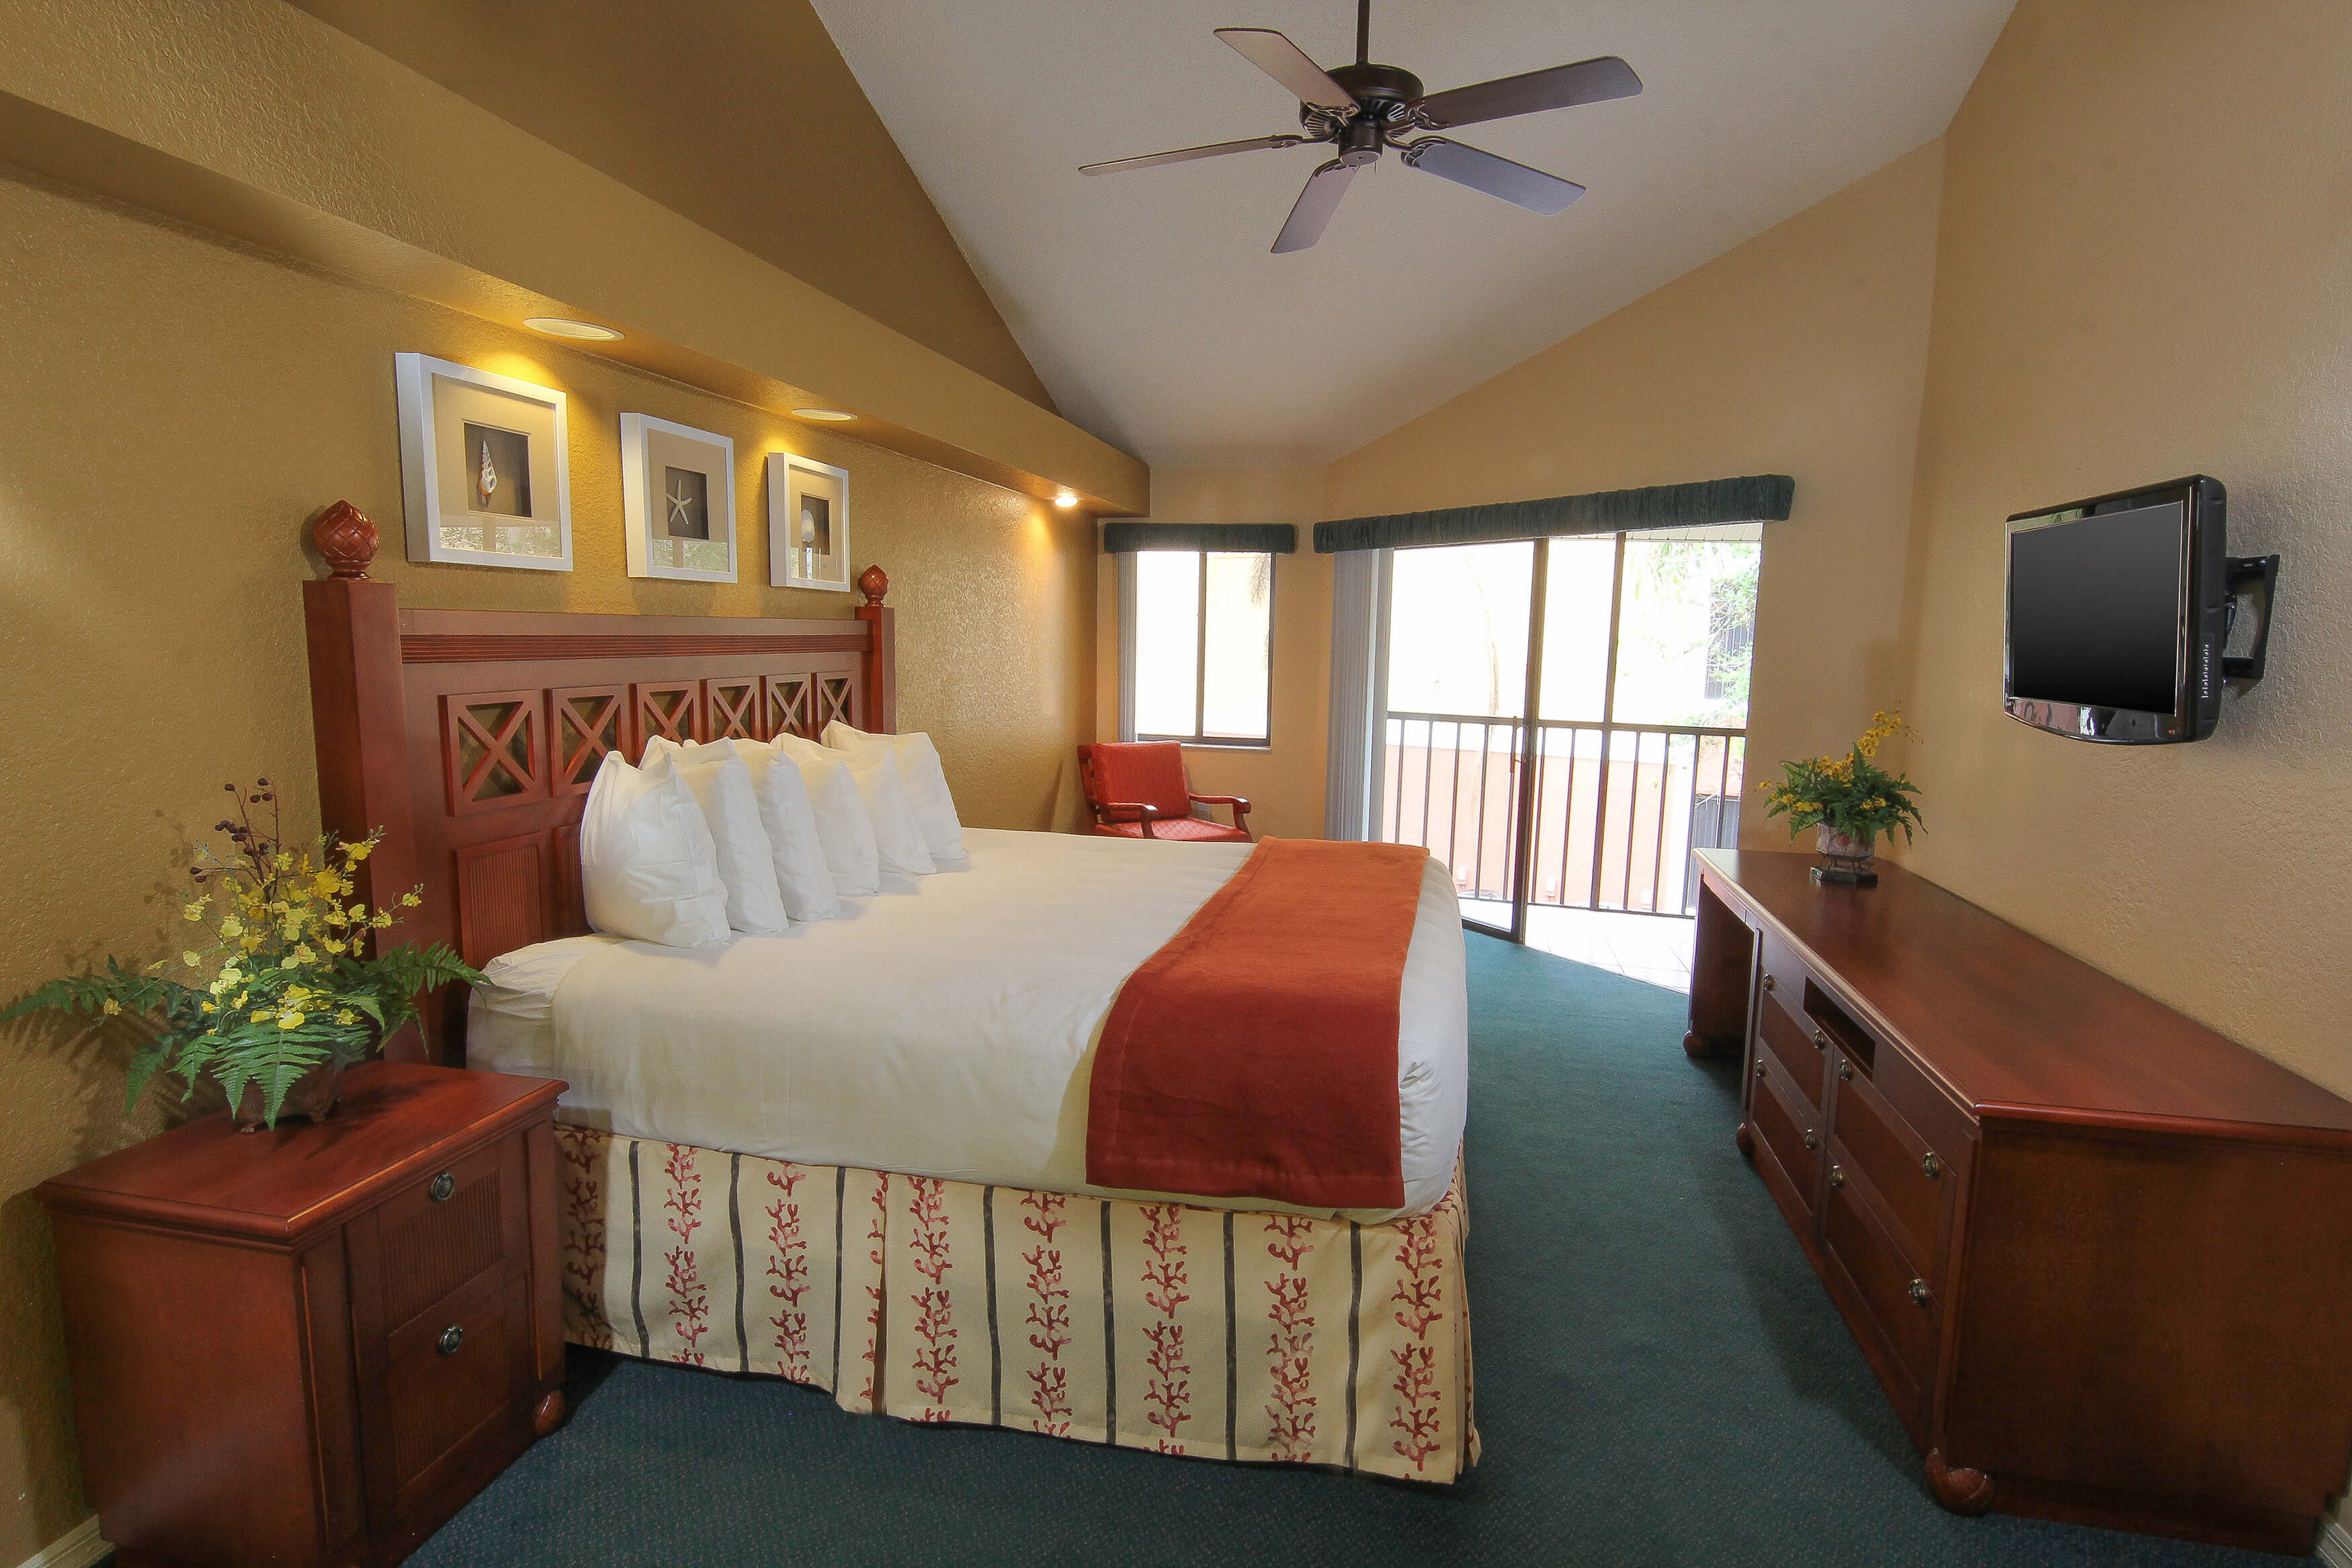 Two Bedroom Villa With Loft Westgate Vacation Villas Resort And Spa Orlando Westgate Resorts